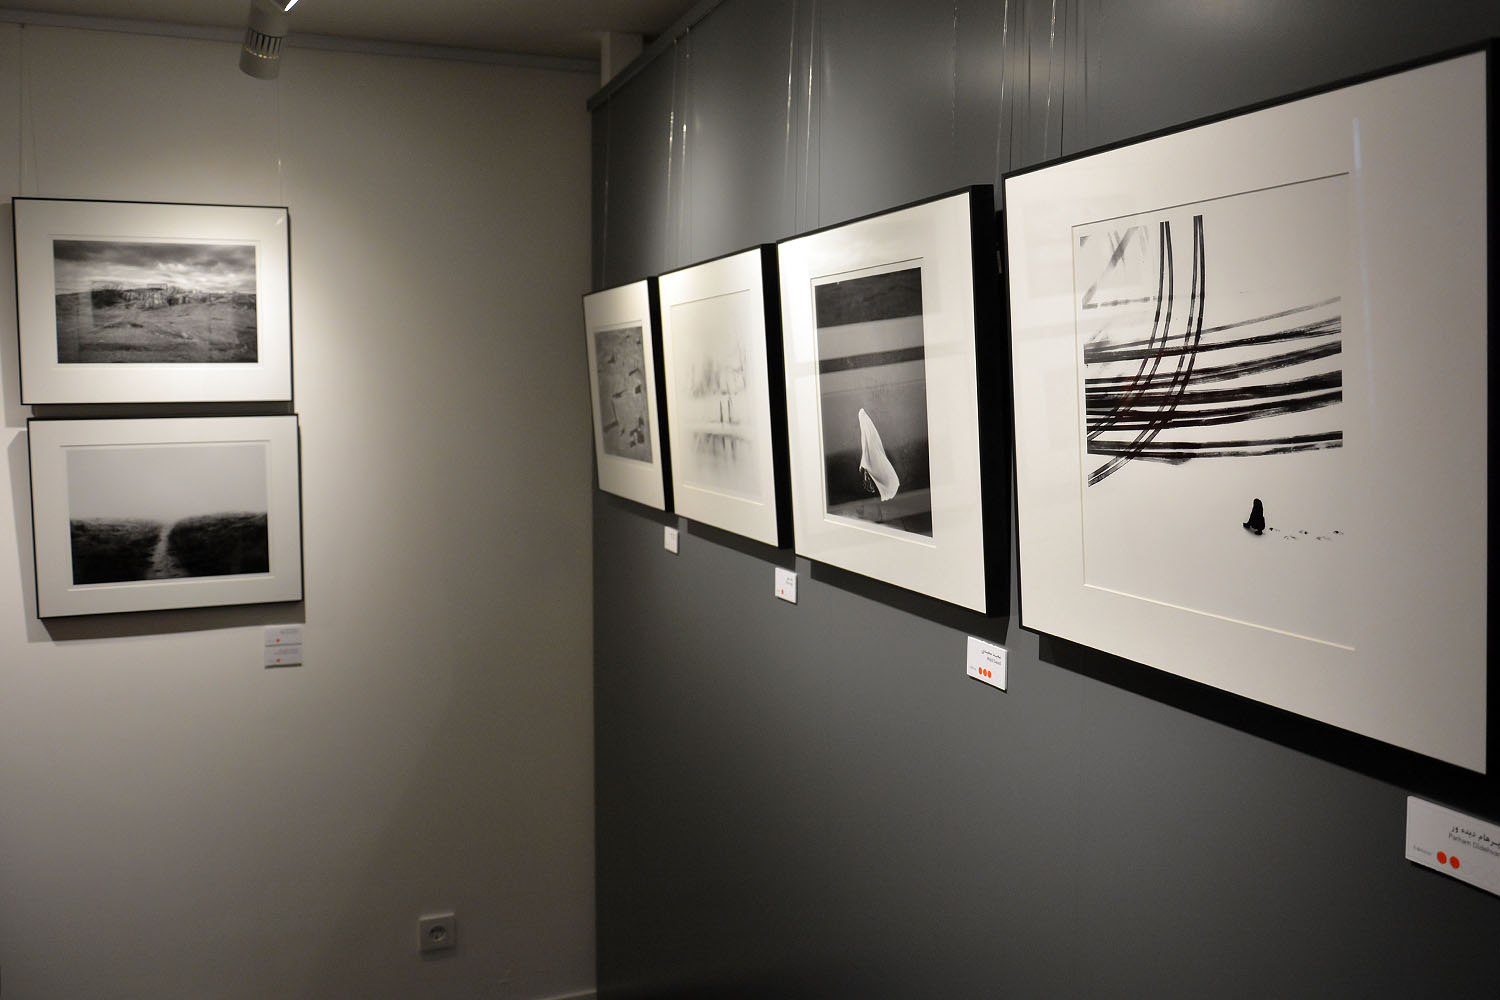 نمایشگاه گروهی عکس از 77 هنرمند در گالری ایوان